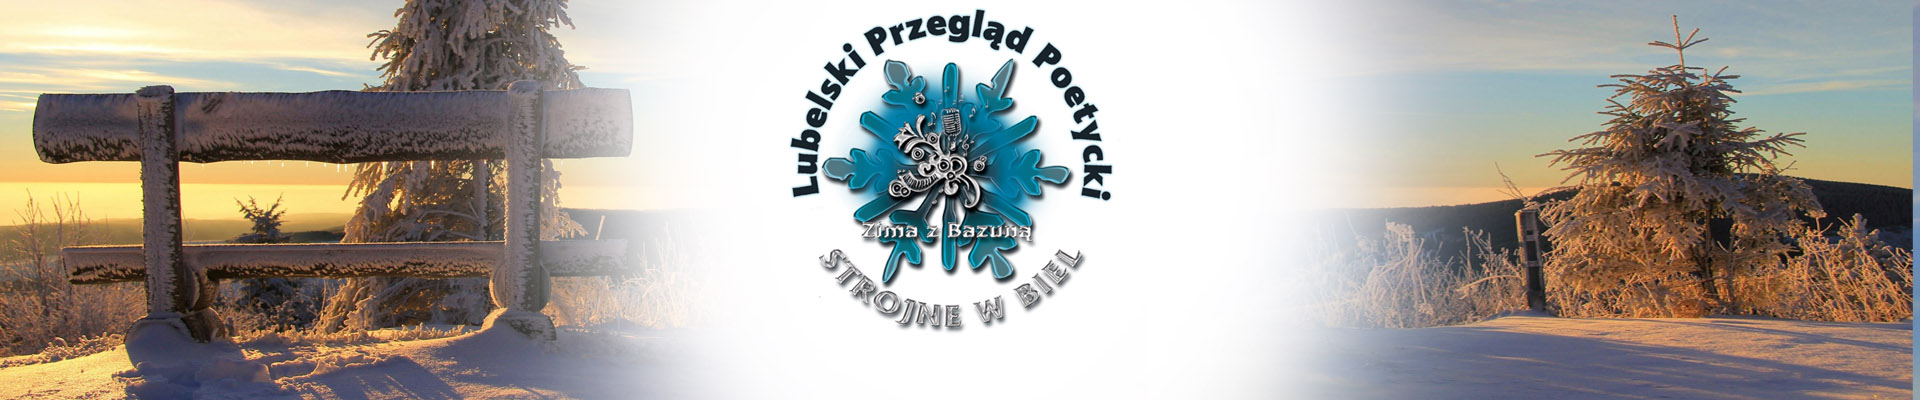 STROJNE w BIEL – 14. edycja festiwalu